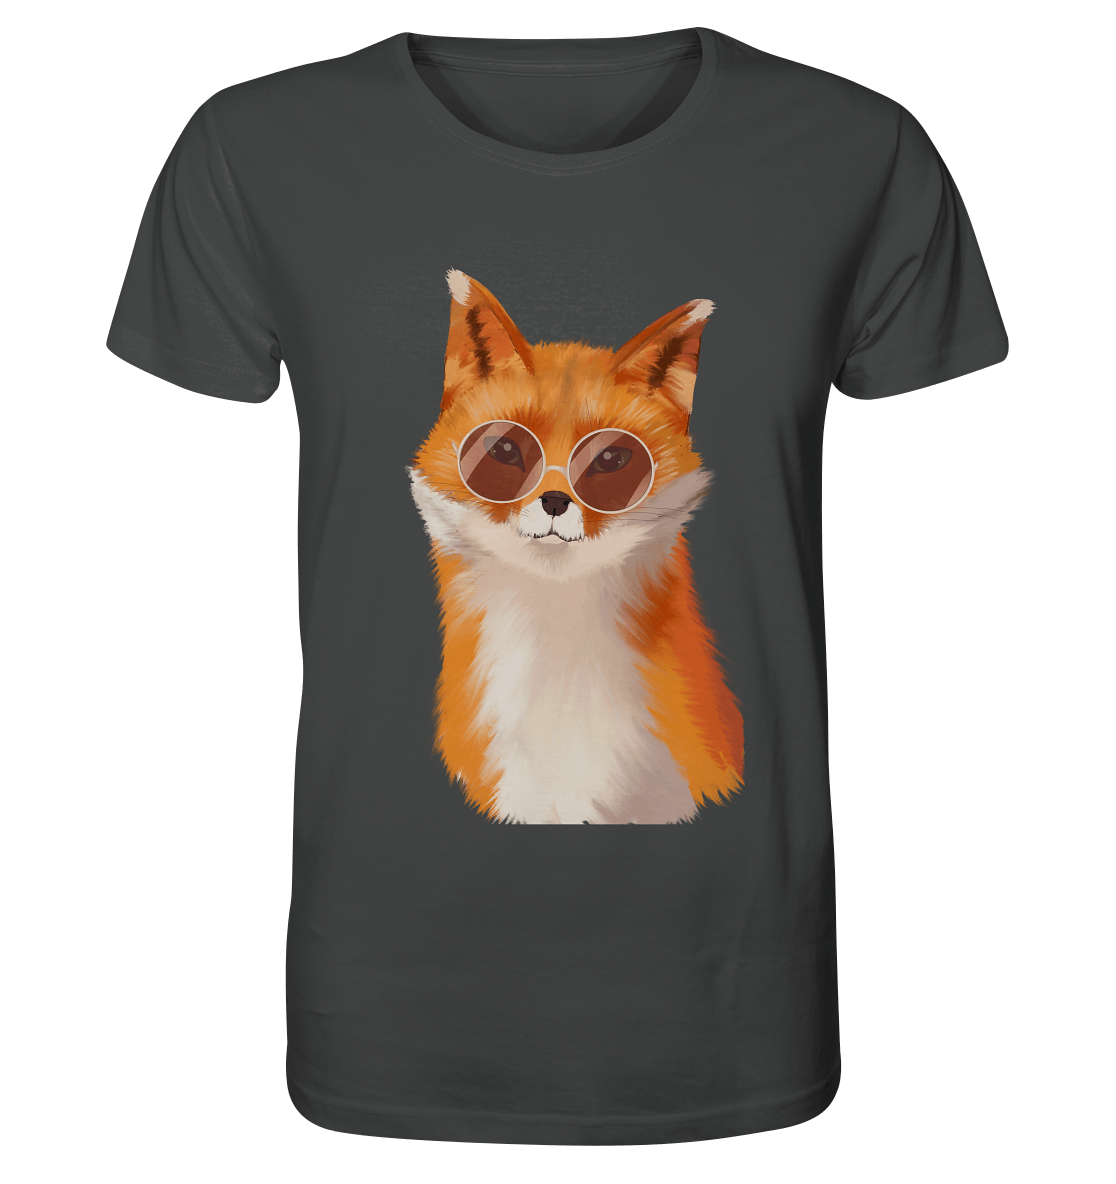 Herren T-Shirt "Fuchs" mit Fuchs Print